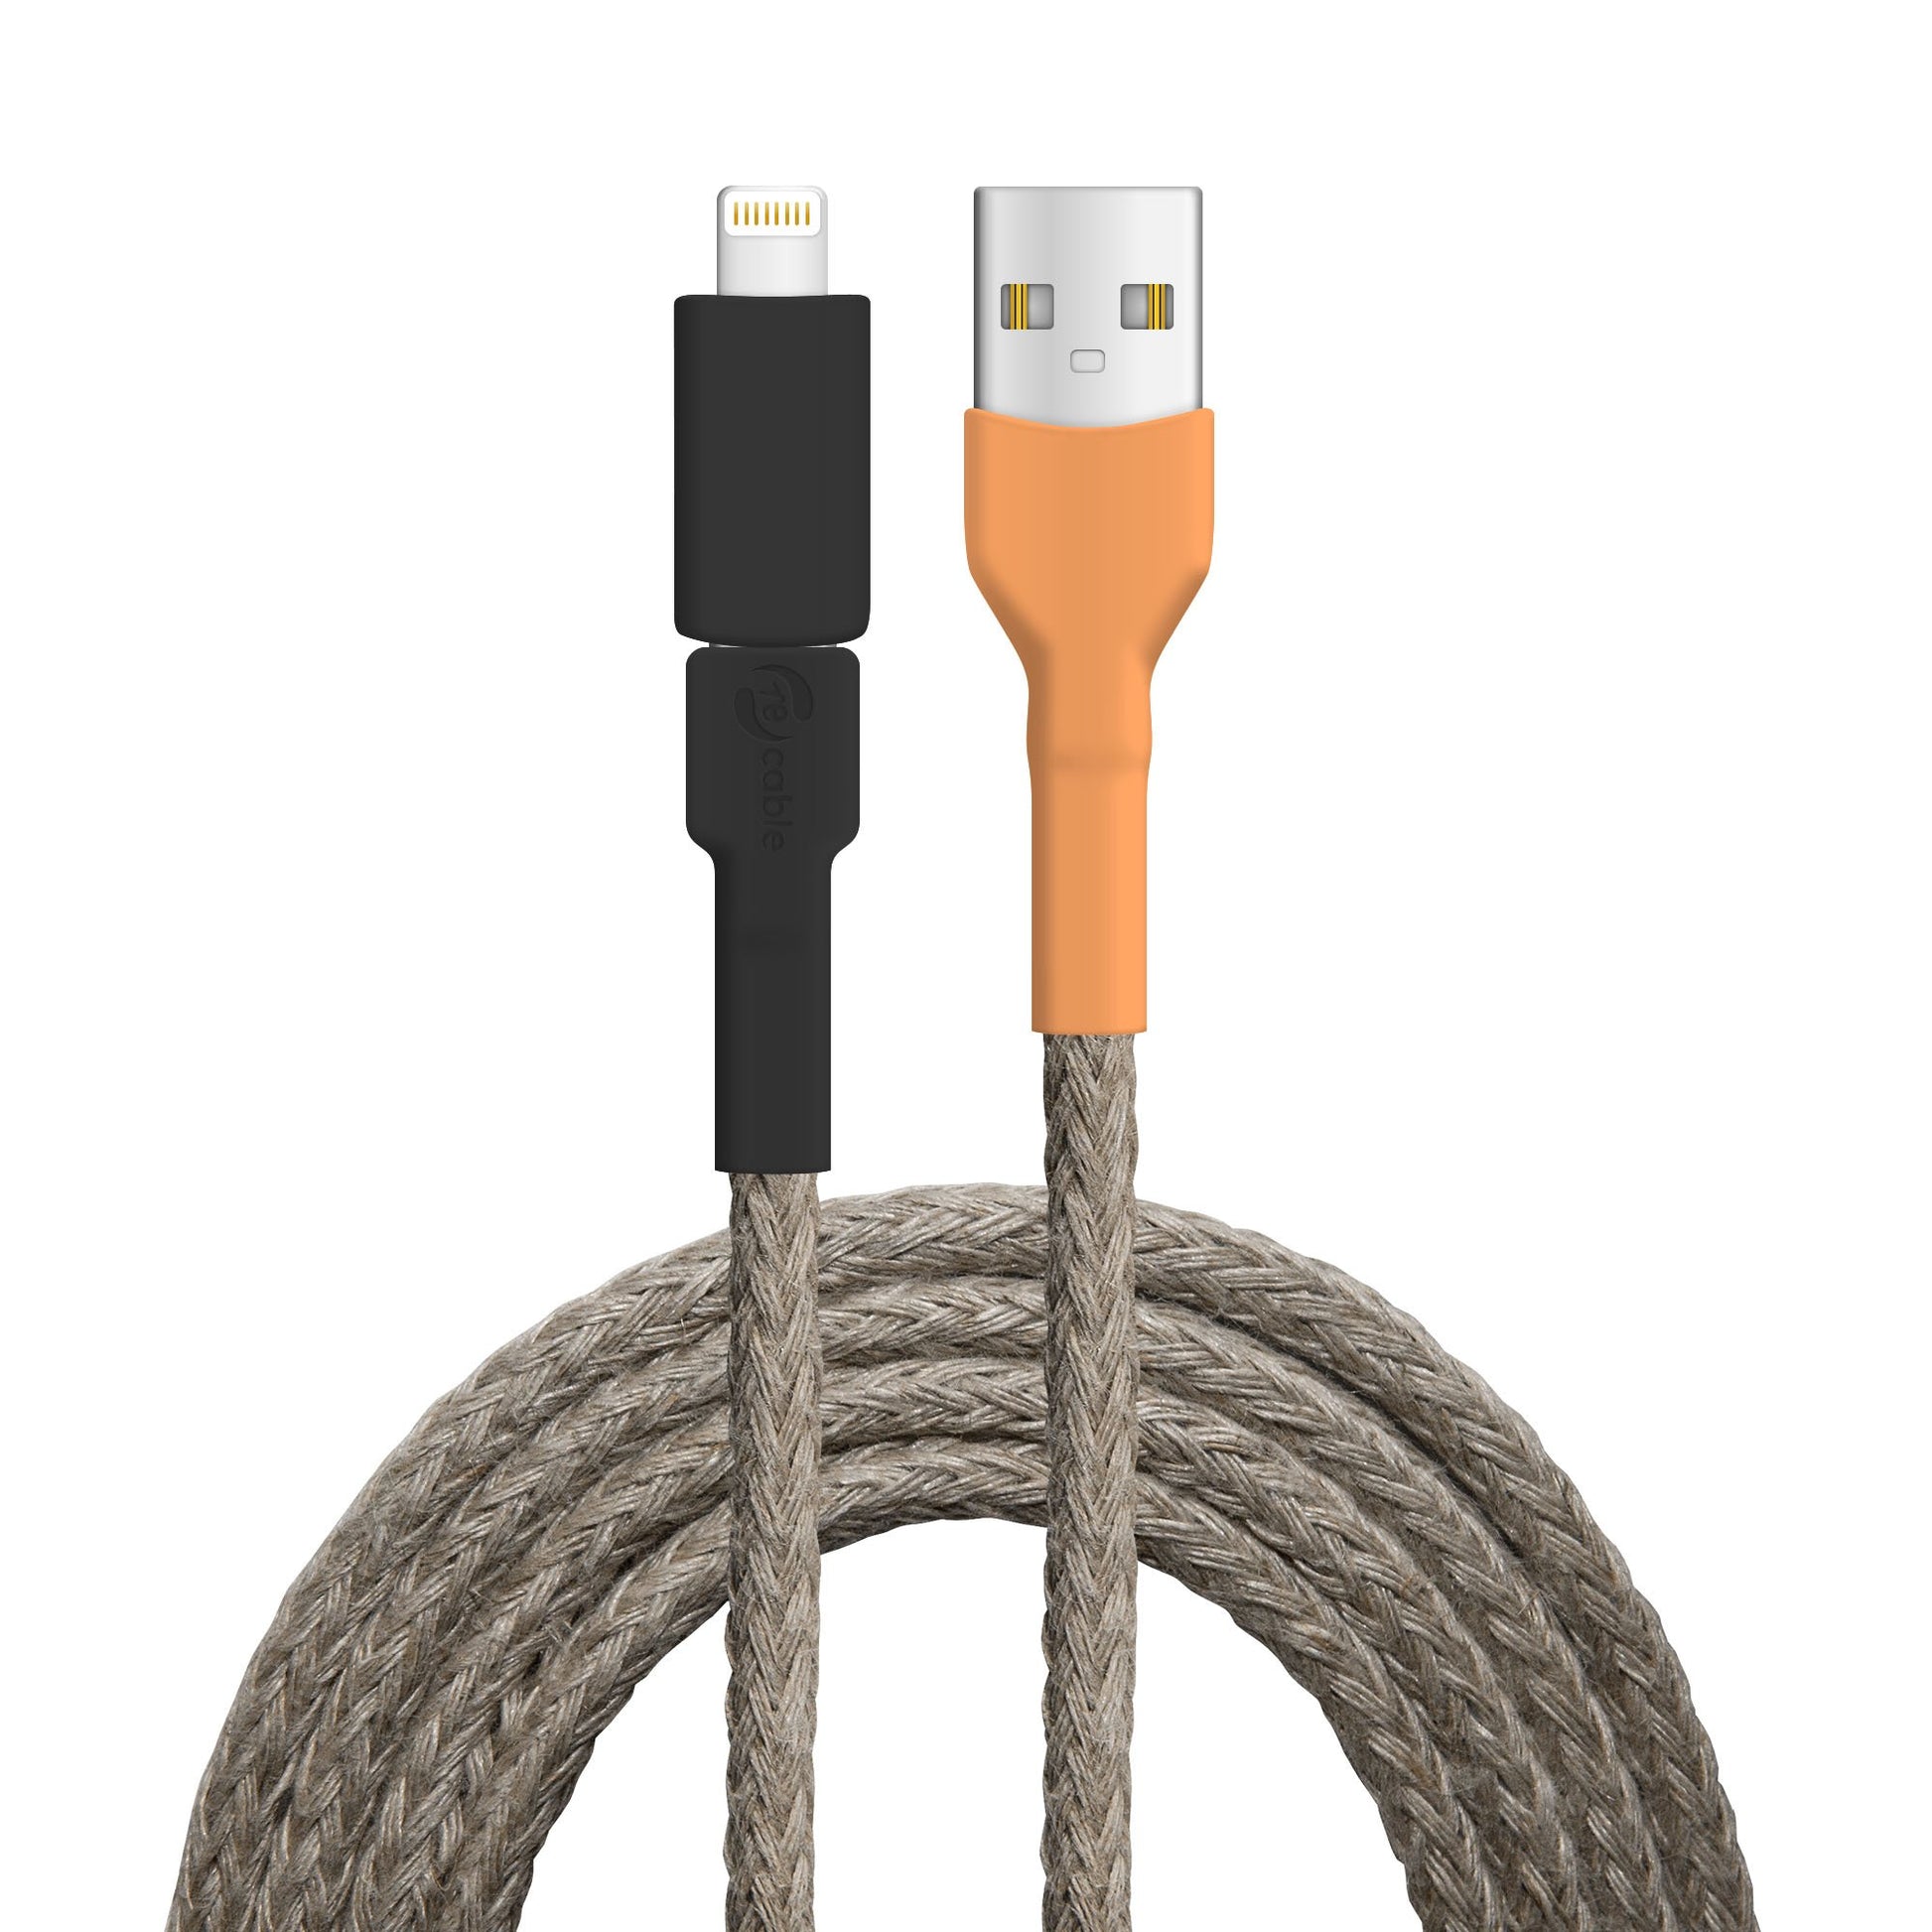 USB-Kabel, Design: Wasser­hahn, Anschlüsse: USB A auf Micro-USB mit Lightning Adapter (verbunden)